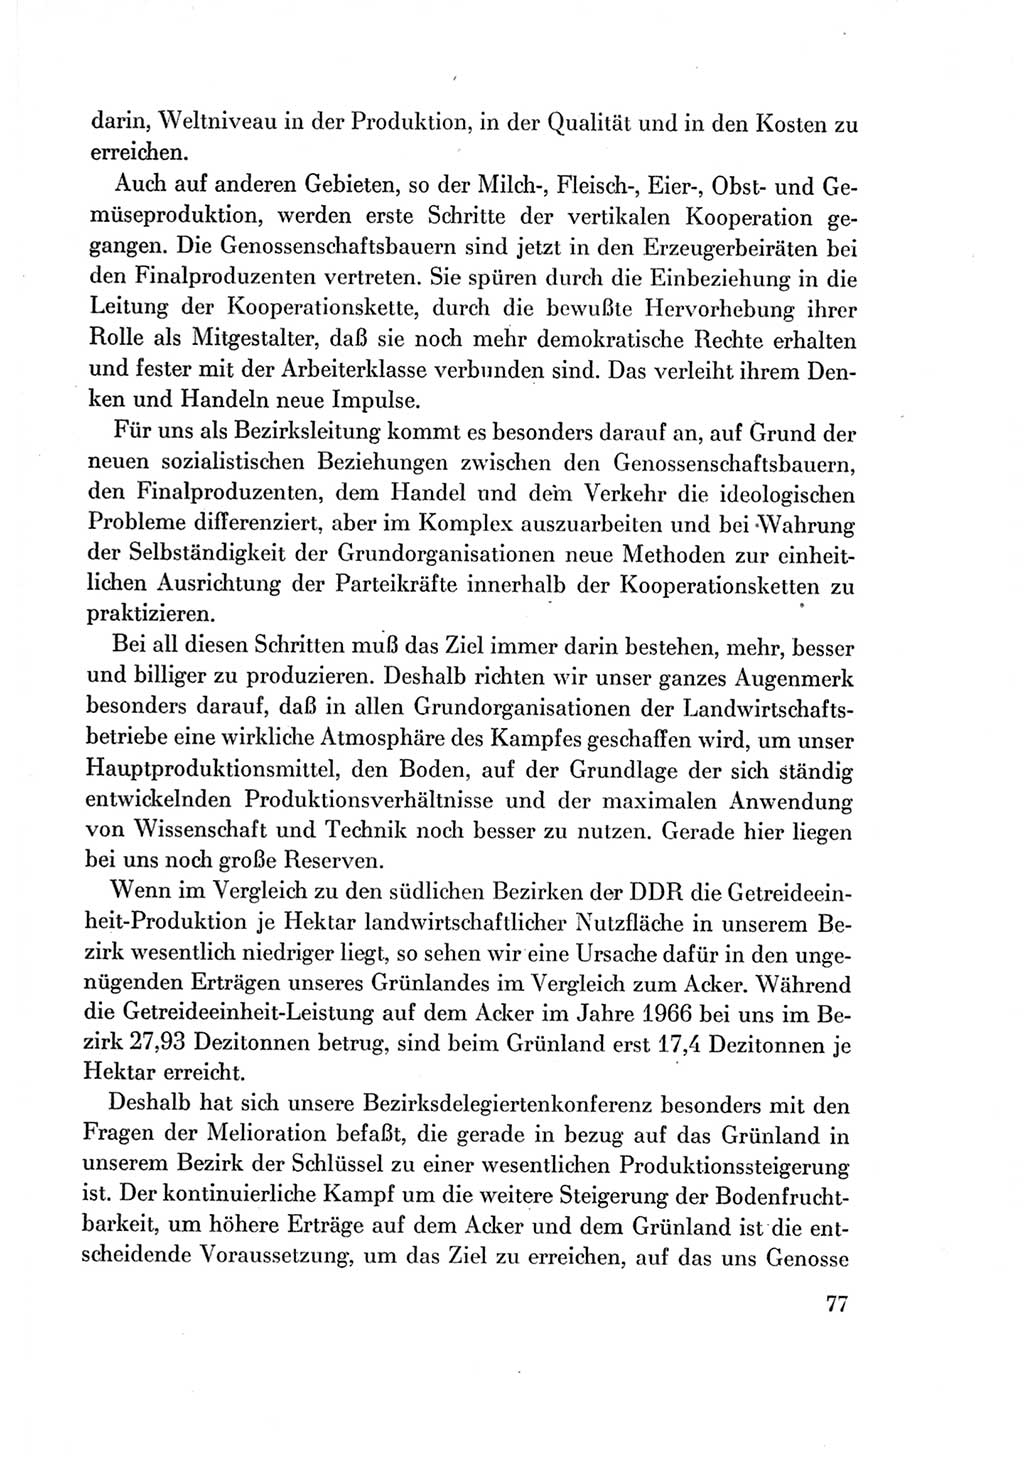 Protokoll der Verhandlungen des Ⅶ. Parteitages der Sozialistischen Einheitspartei Deutschlands (SED) [Deutsche Demokratische Republik (DDR)] 1967, Band Ⅱ, Seite 77 (Prot. Verh. Ⅶ. PT SED DDR 1967, Bd. Ⅱ, S. 77)